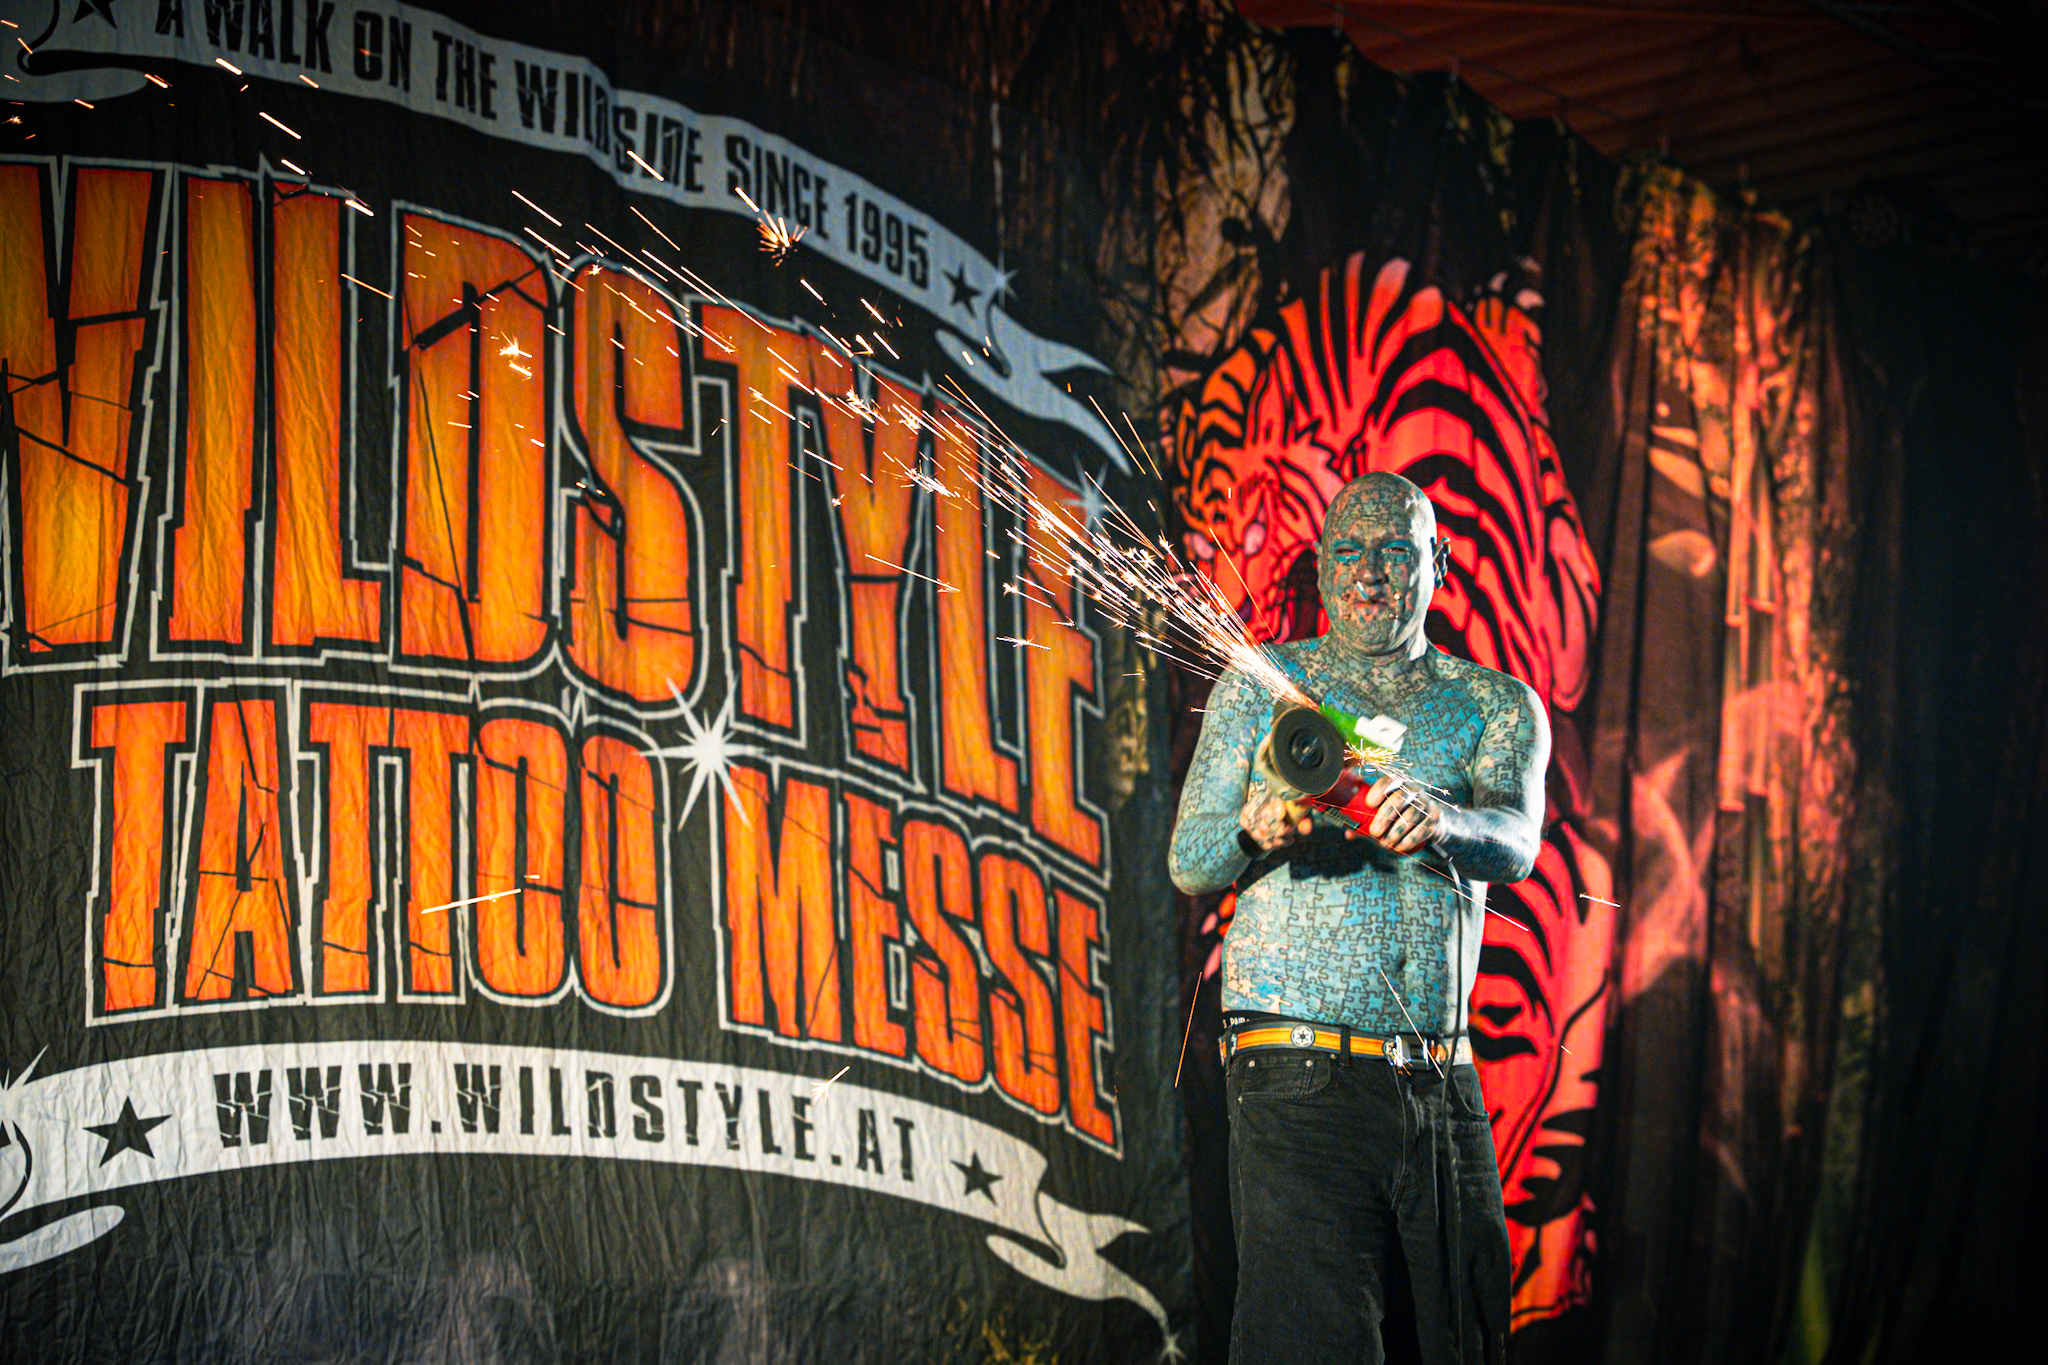 Wildstyle & Tattoo Messe Wien